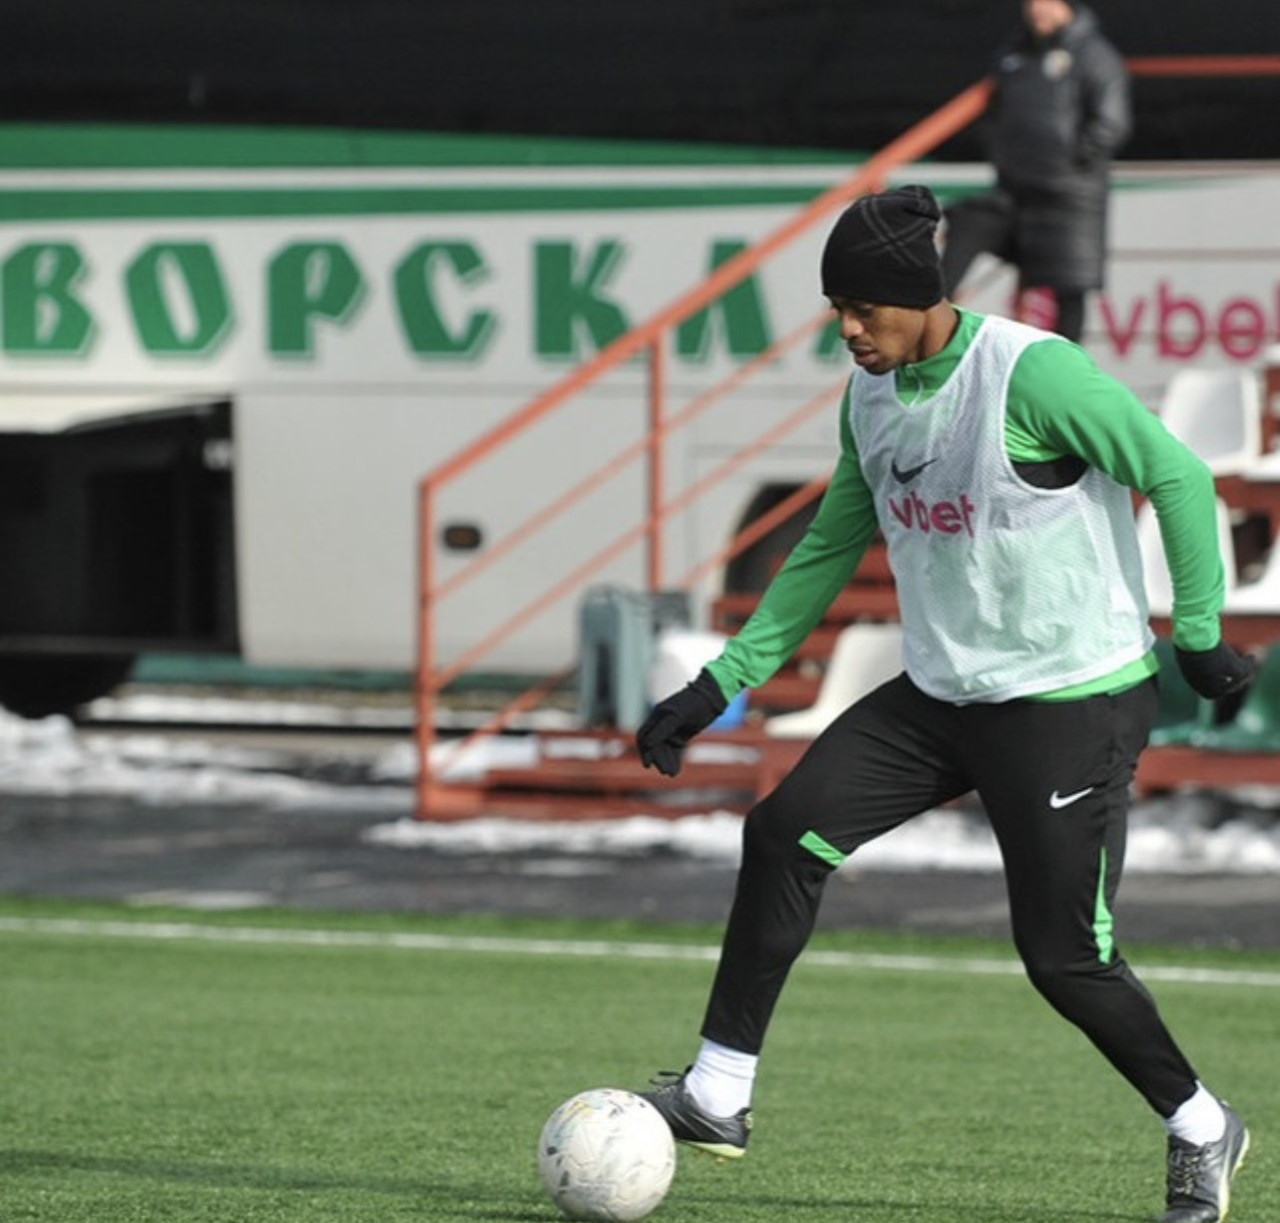 Destaque na Ucrânia, Ricardo Lopes foca em
boa sequência no FC Vorskla